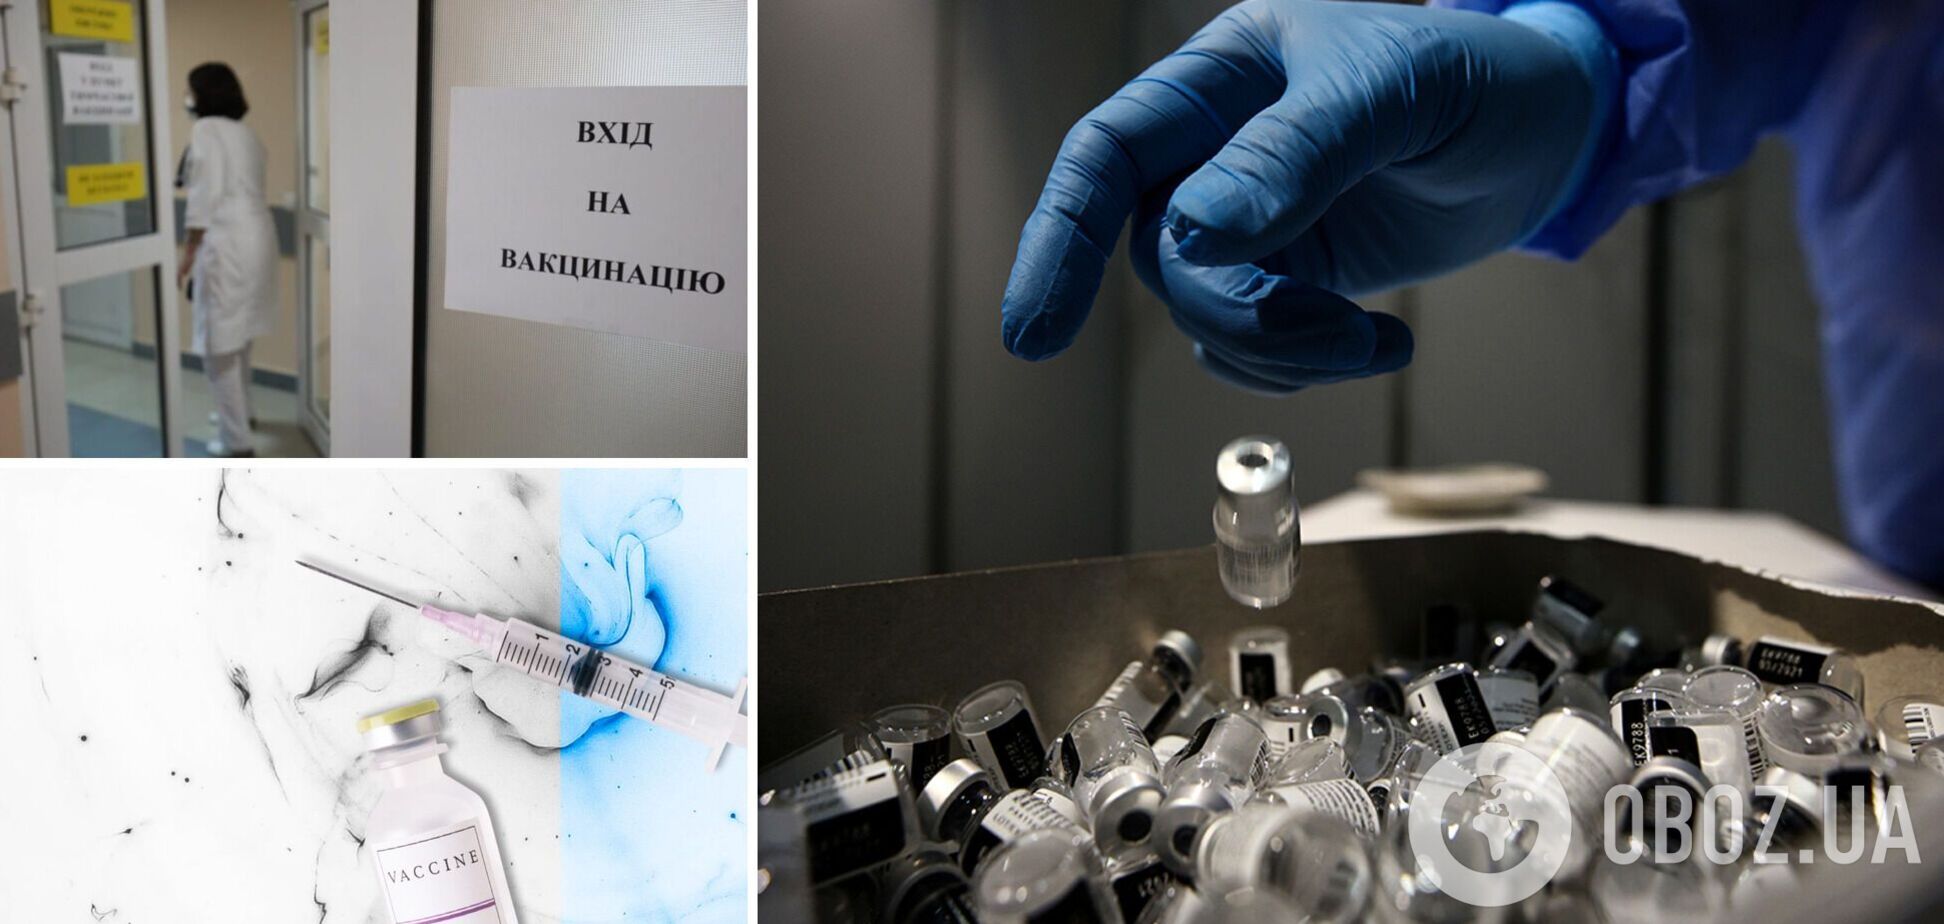 Вакцину, которая может спасти жизнь, сливают в канализацию: в Украине разоблачили аферу. Видео